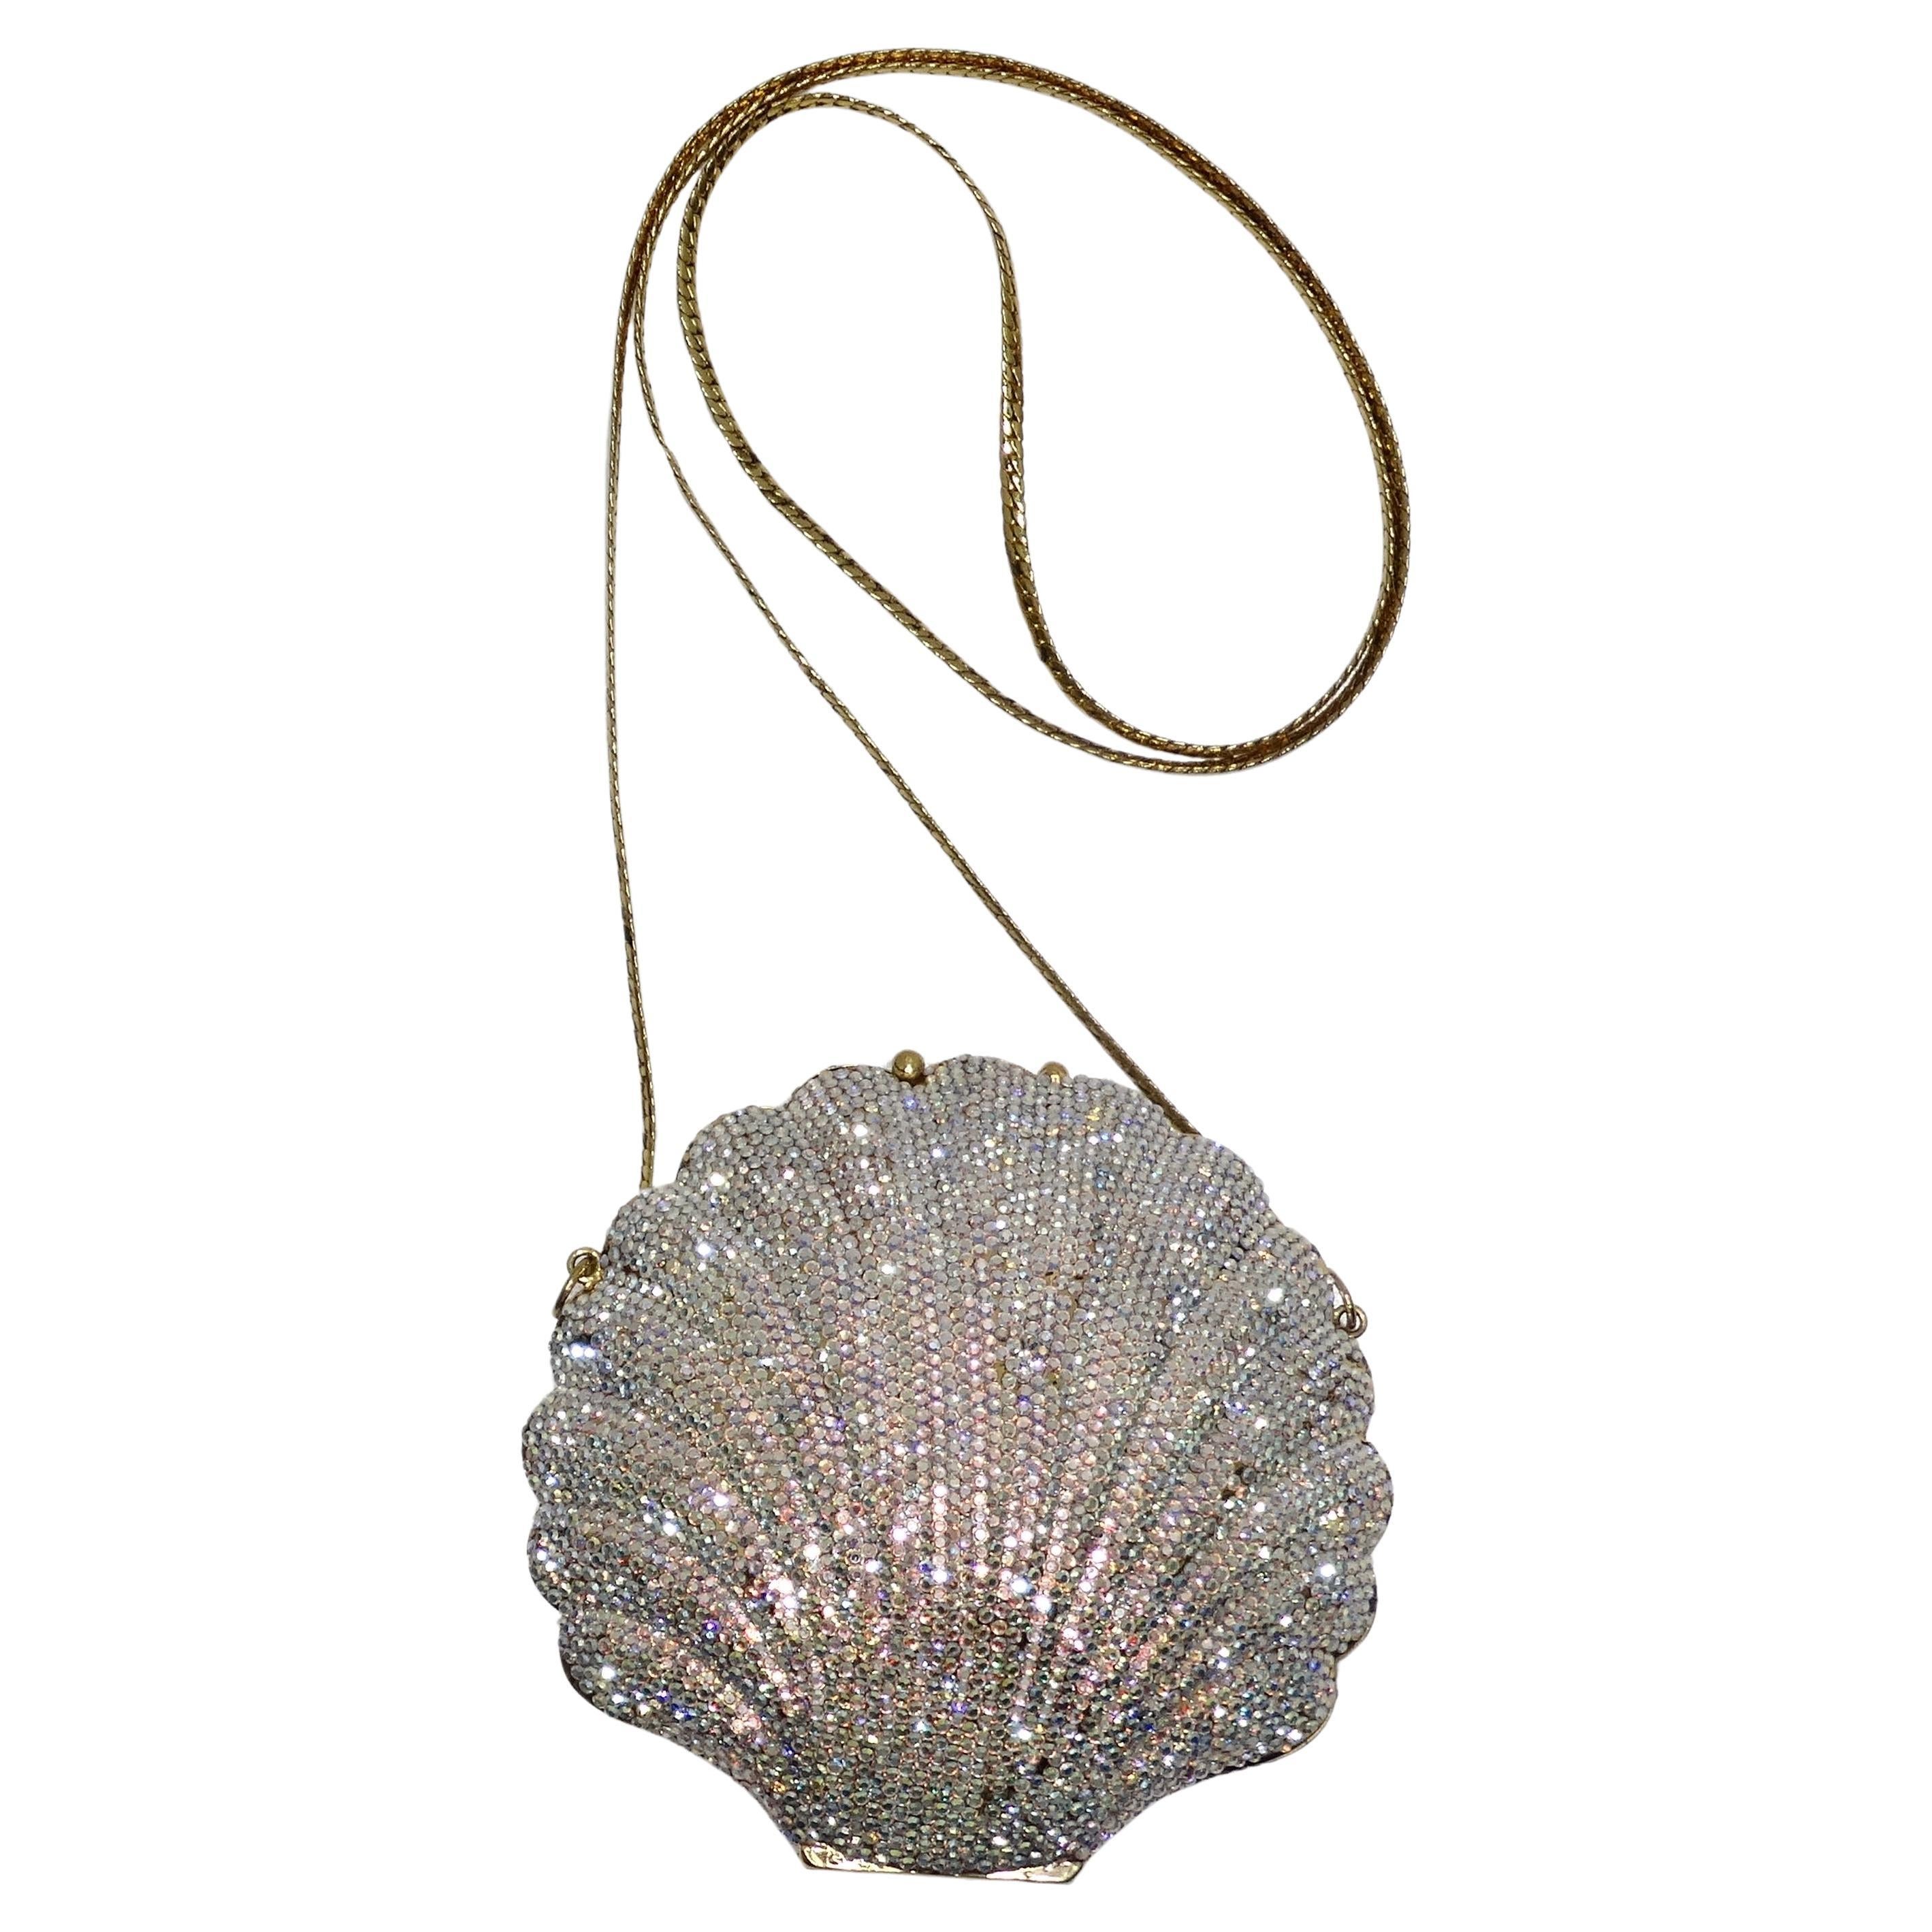 1980s Swarovski Crystal Sea Shell Handbag For Sale